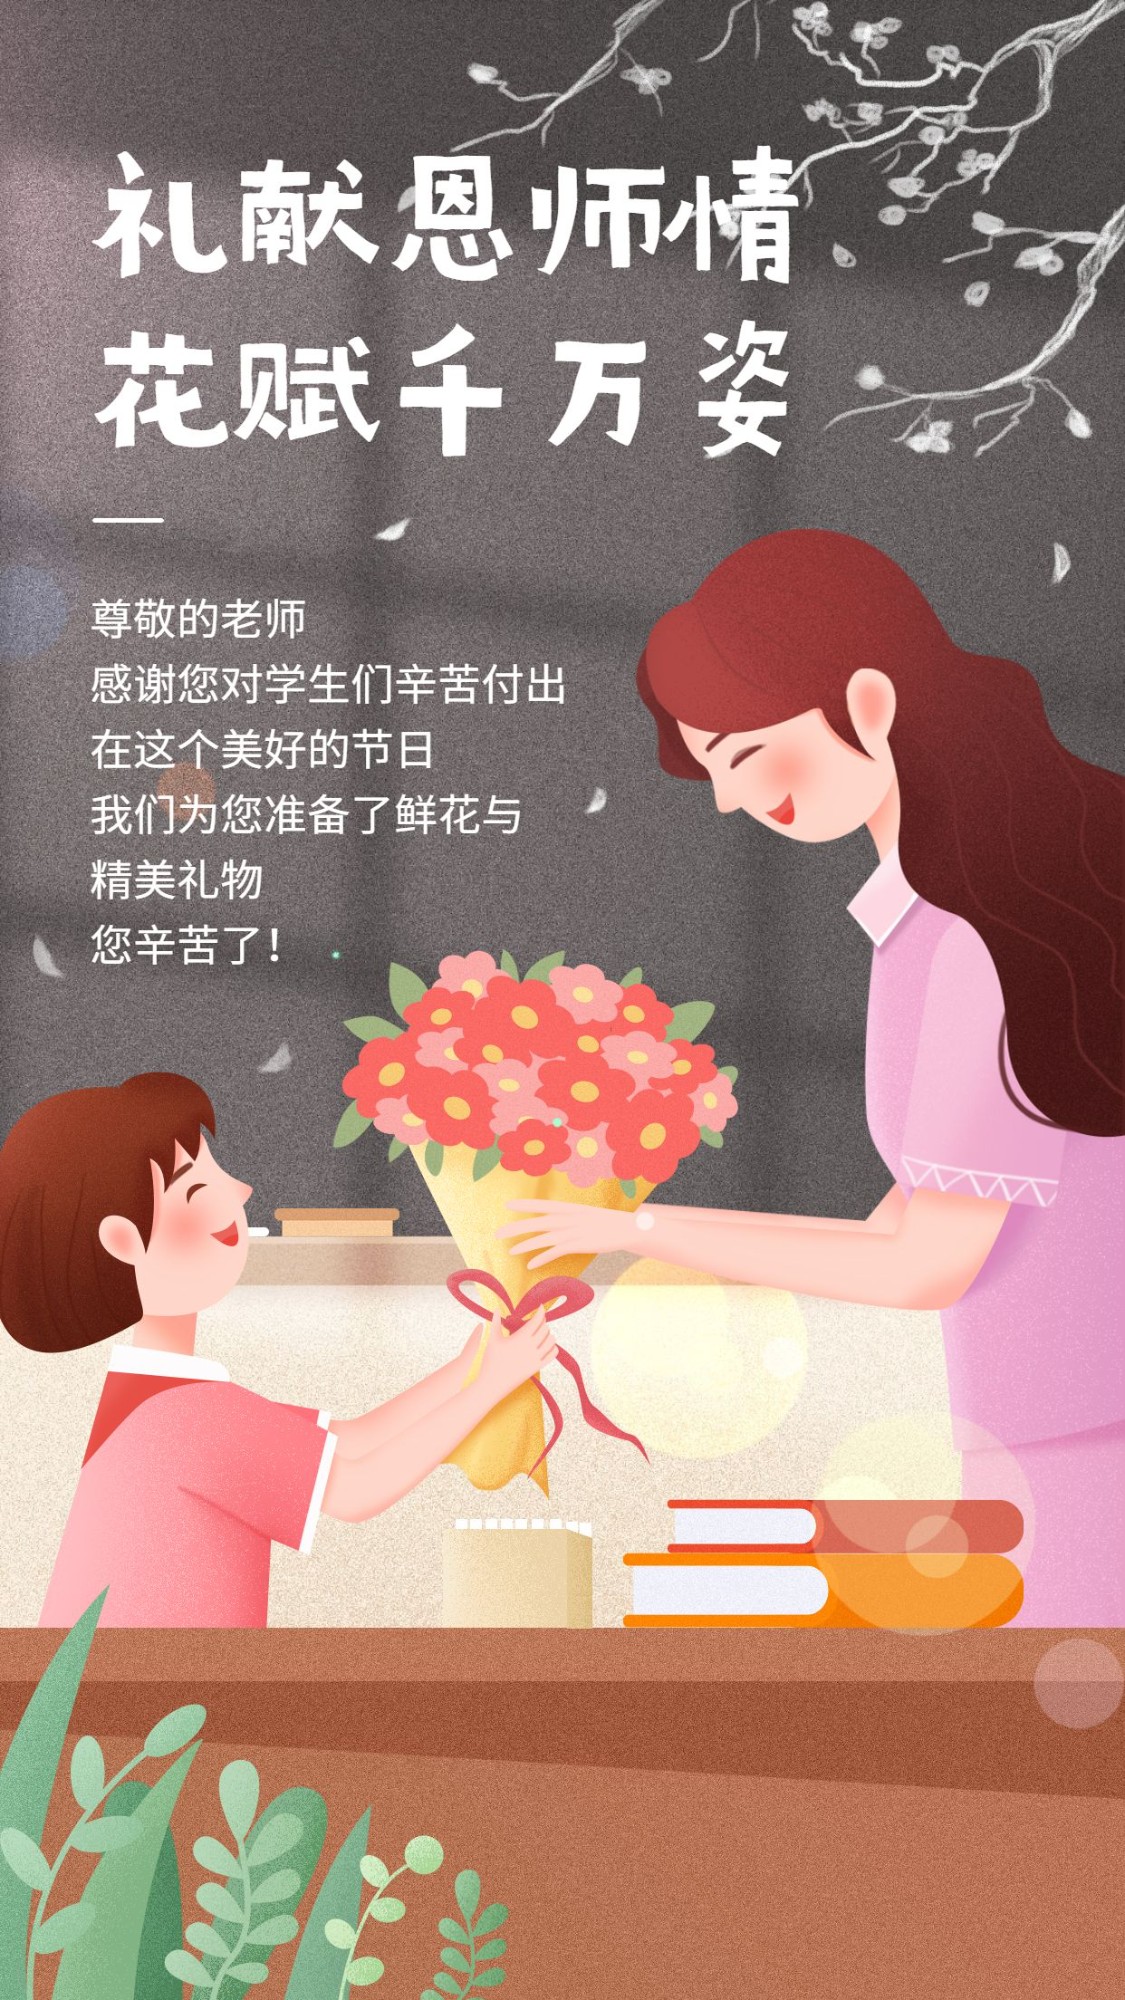 教师节节日祝福手绘海报预览效果